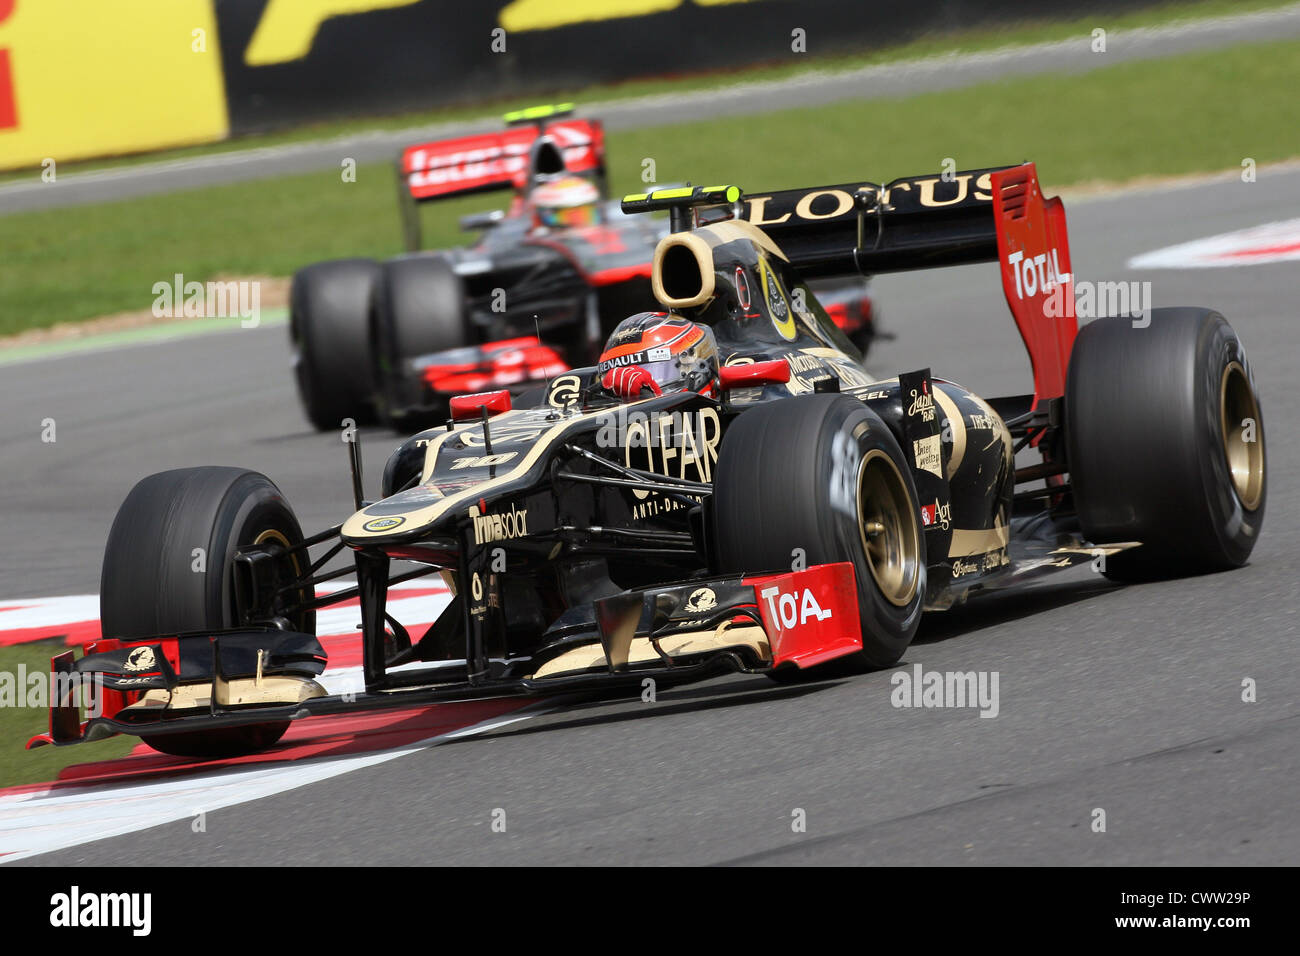 Romain Grosjean (Lotus F1) britischen Grand Prix von Silverstone UK. Formel 1, Formel 1 Stockfoto